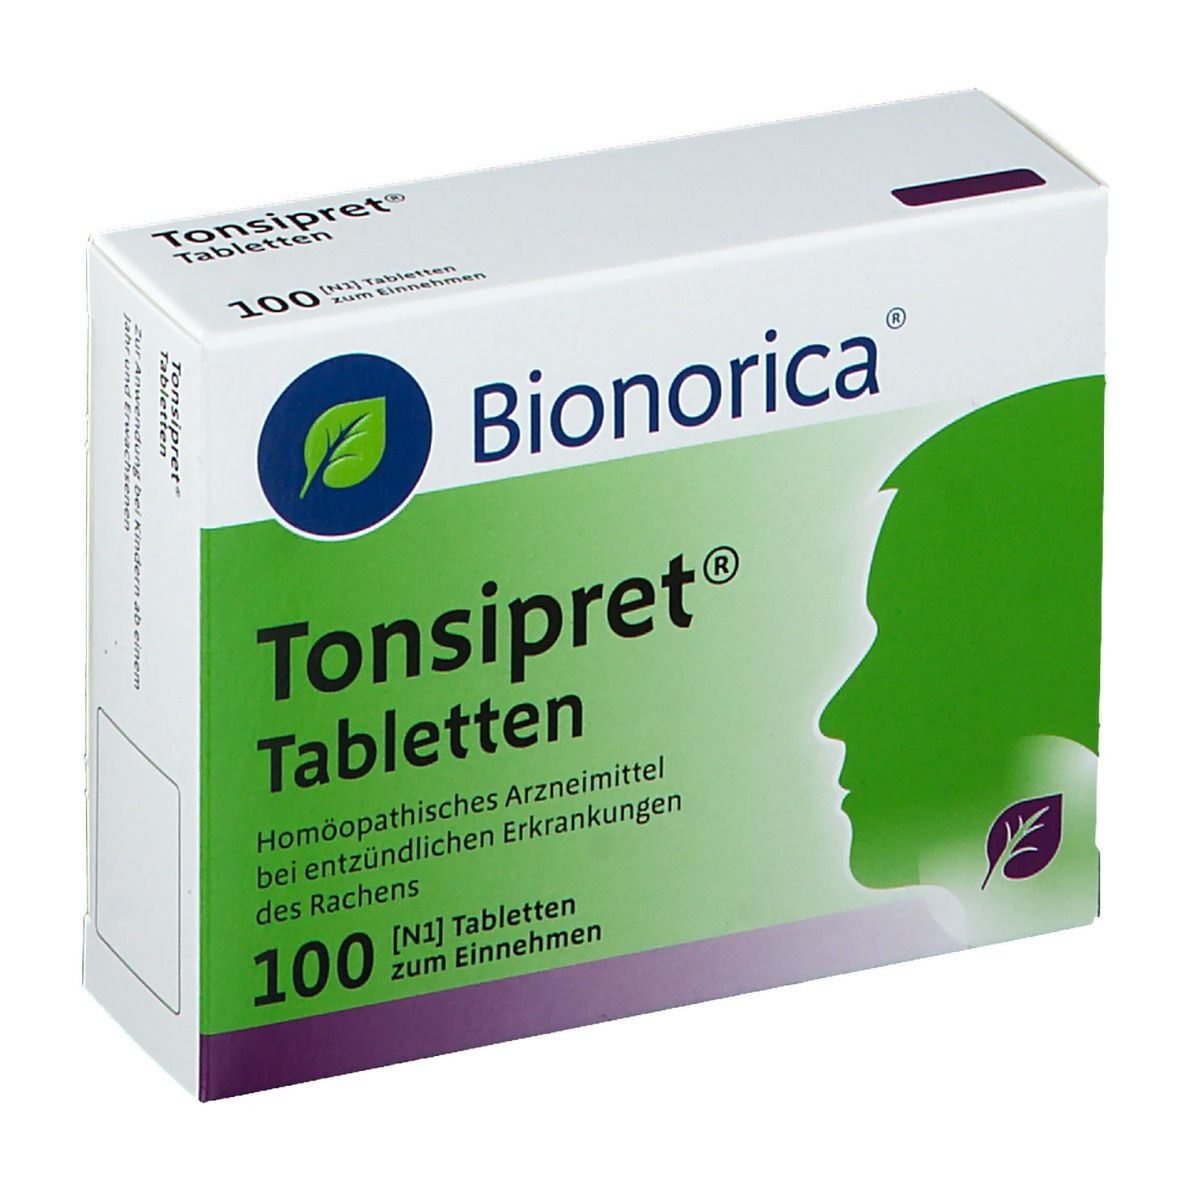 Tonsipret® Tabletten